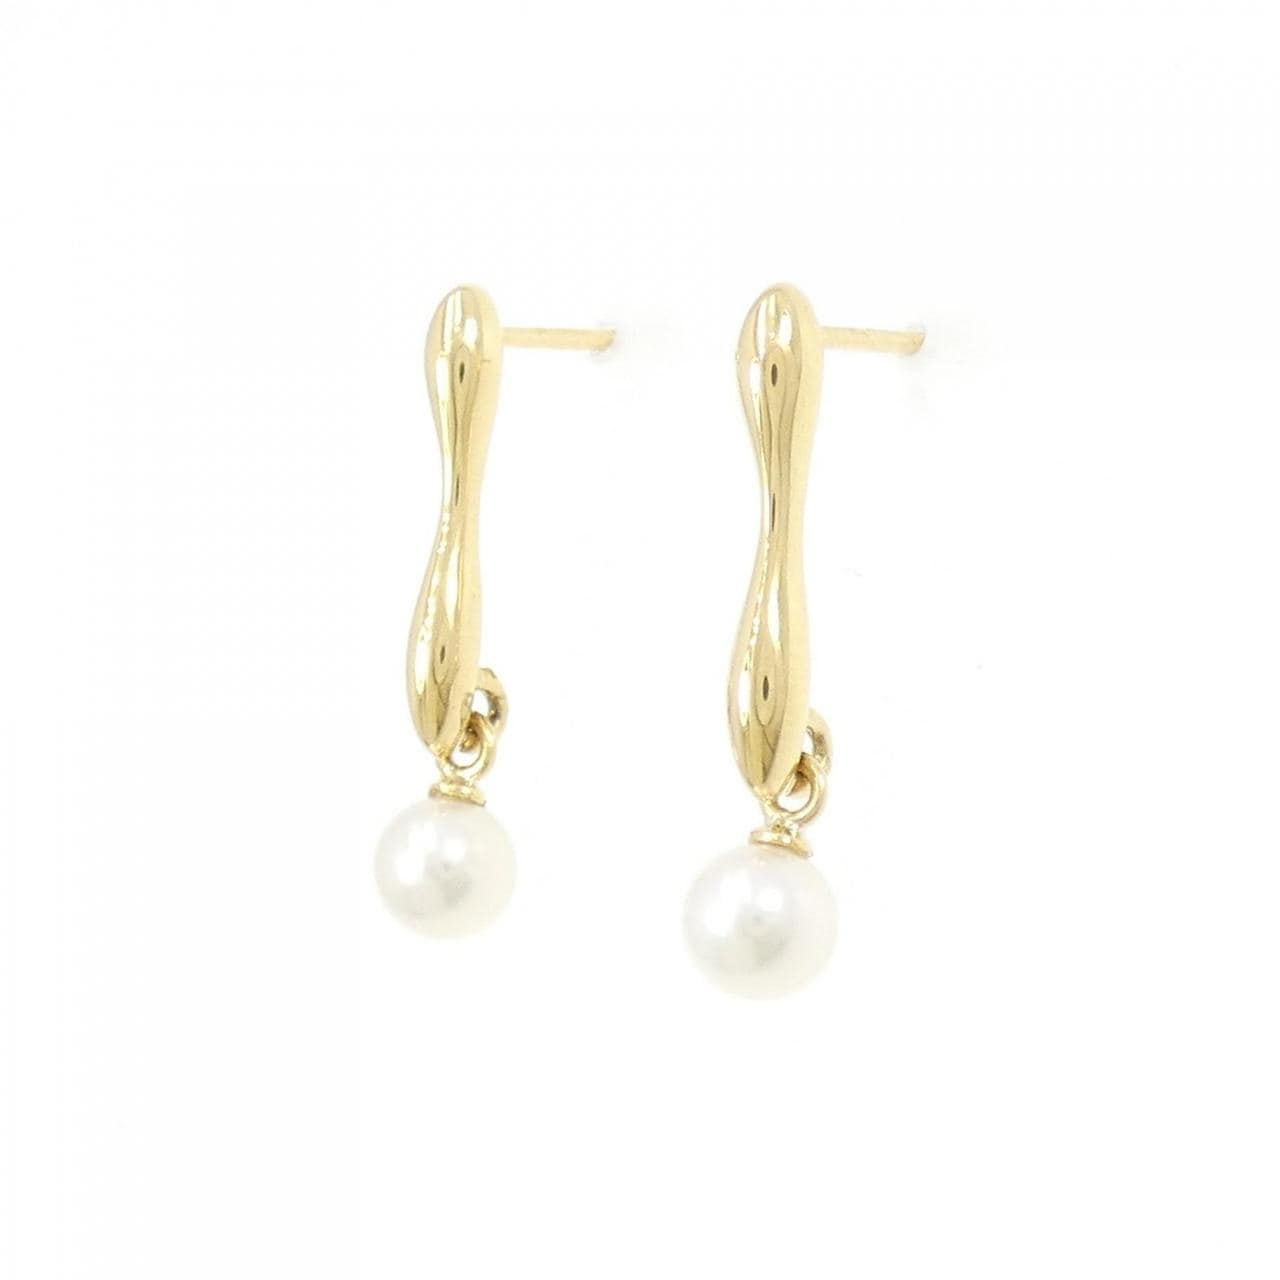 K18YG Akoya pearl earrings 4.9mm